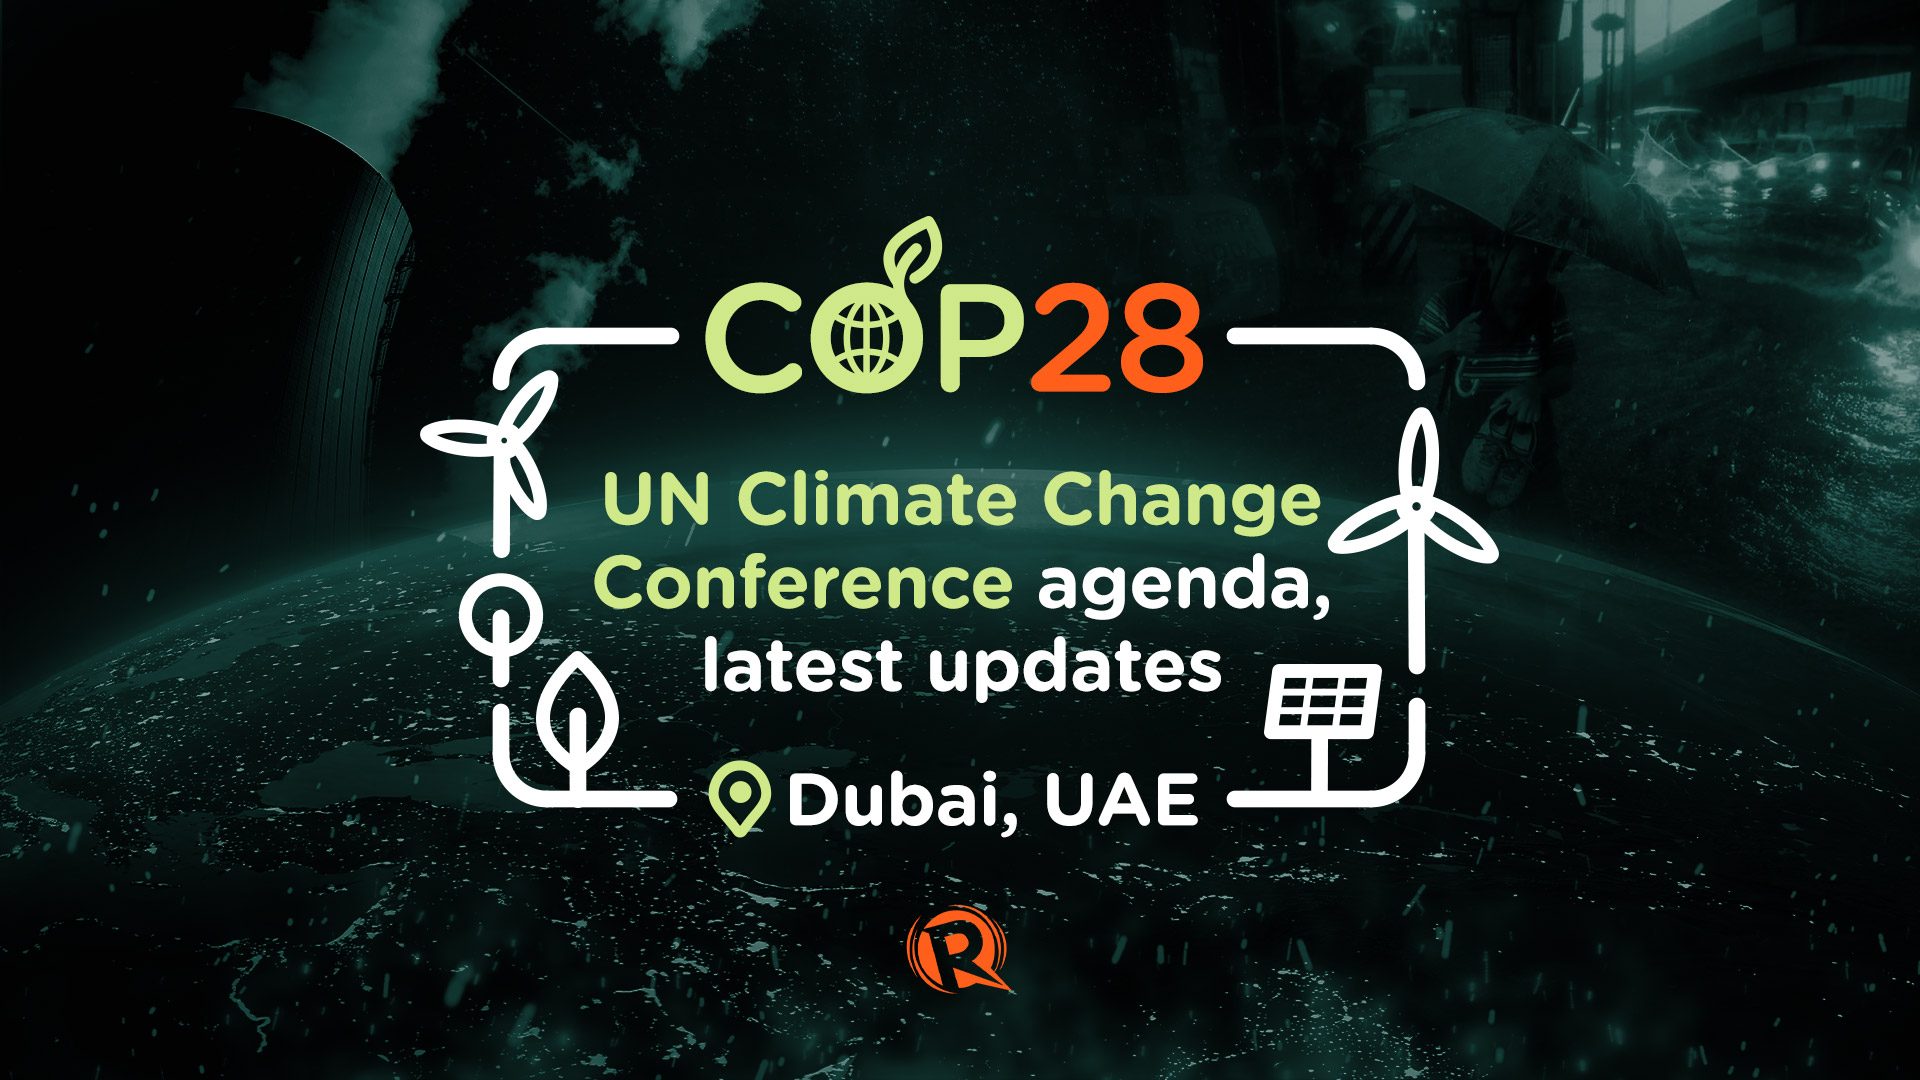 COP28: UN Climate Change Conference agenda, latest updates